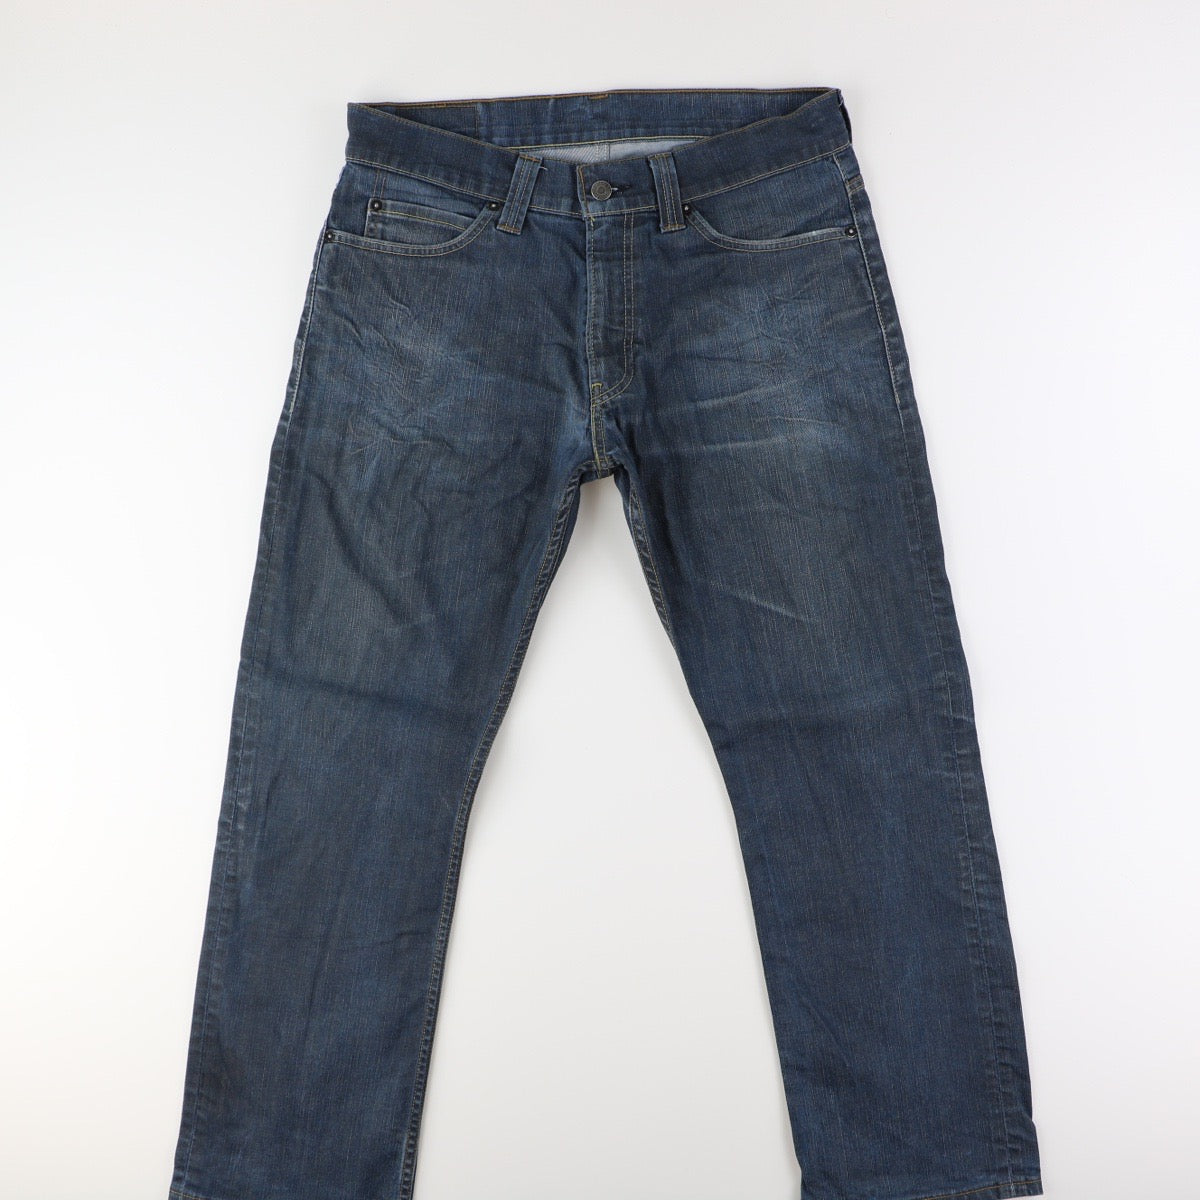 Levis 506 Jeans (34)